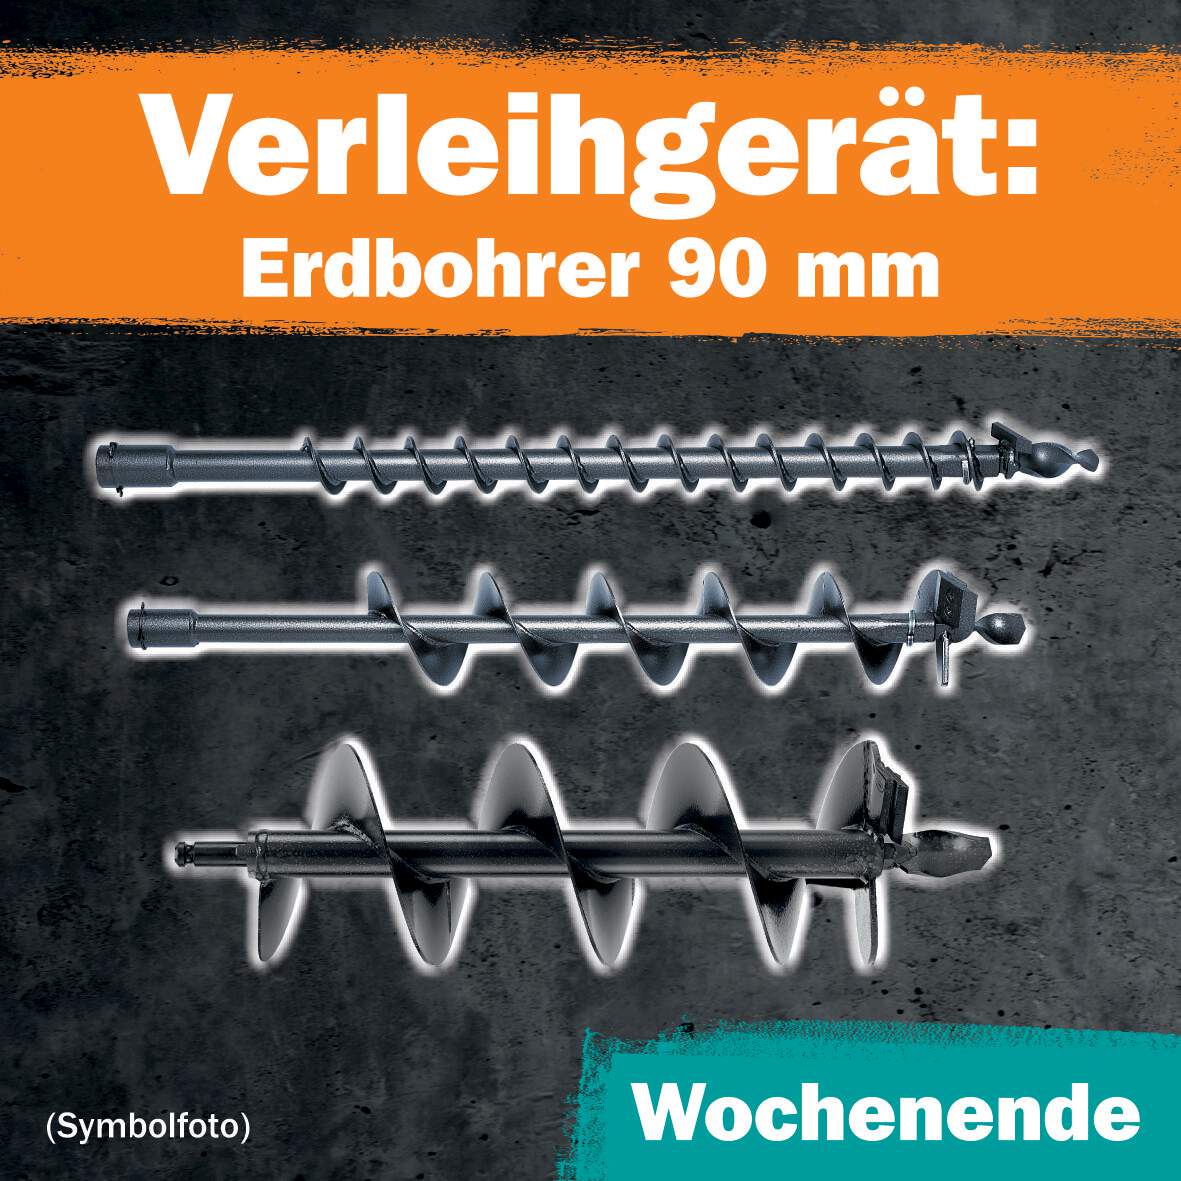 1288649 - Erdbohrer 90mm 1 Wochenende Leihdauer